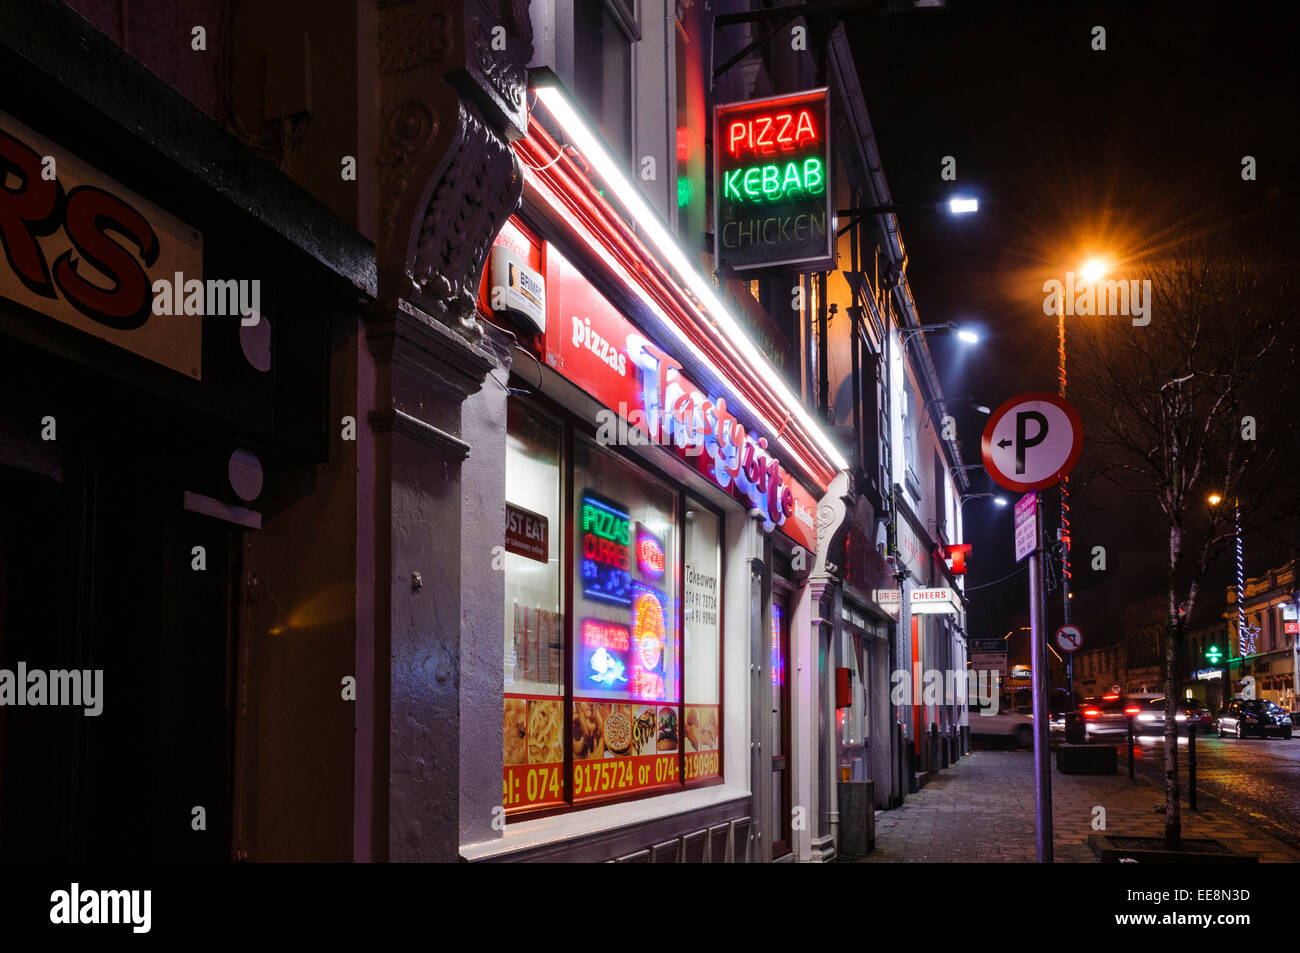 Pizza et kebab dans une rue d'une ville irlandaise dans la nuit. Banque D'Images